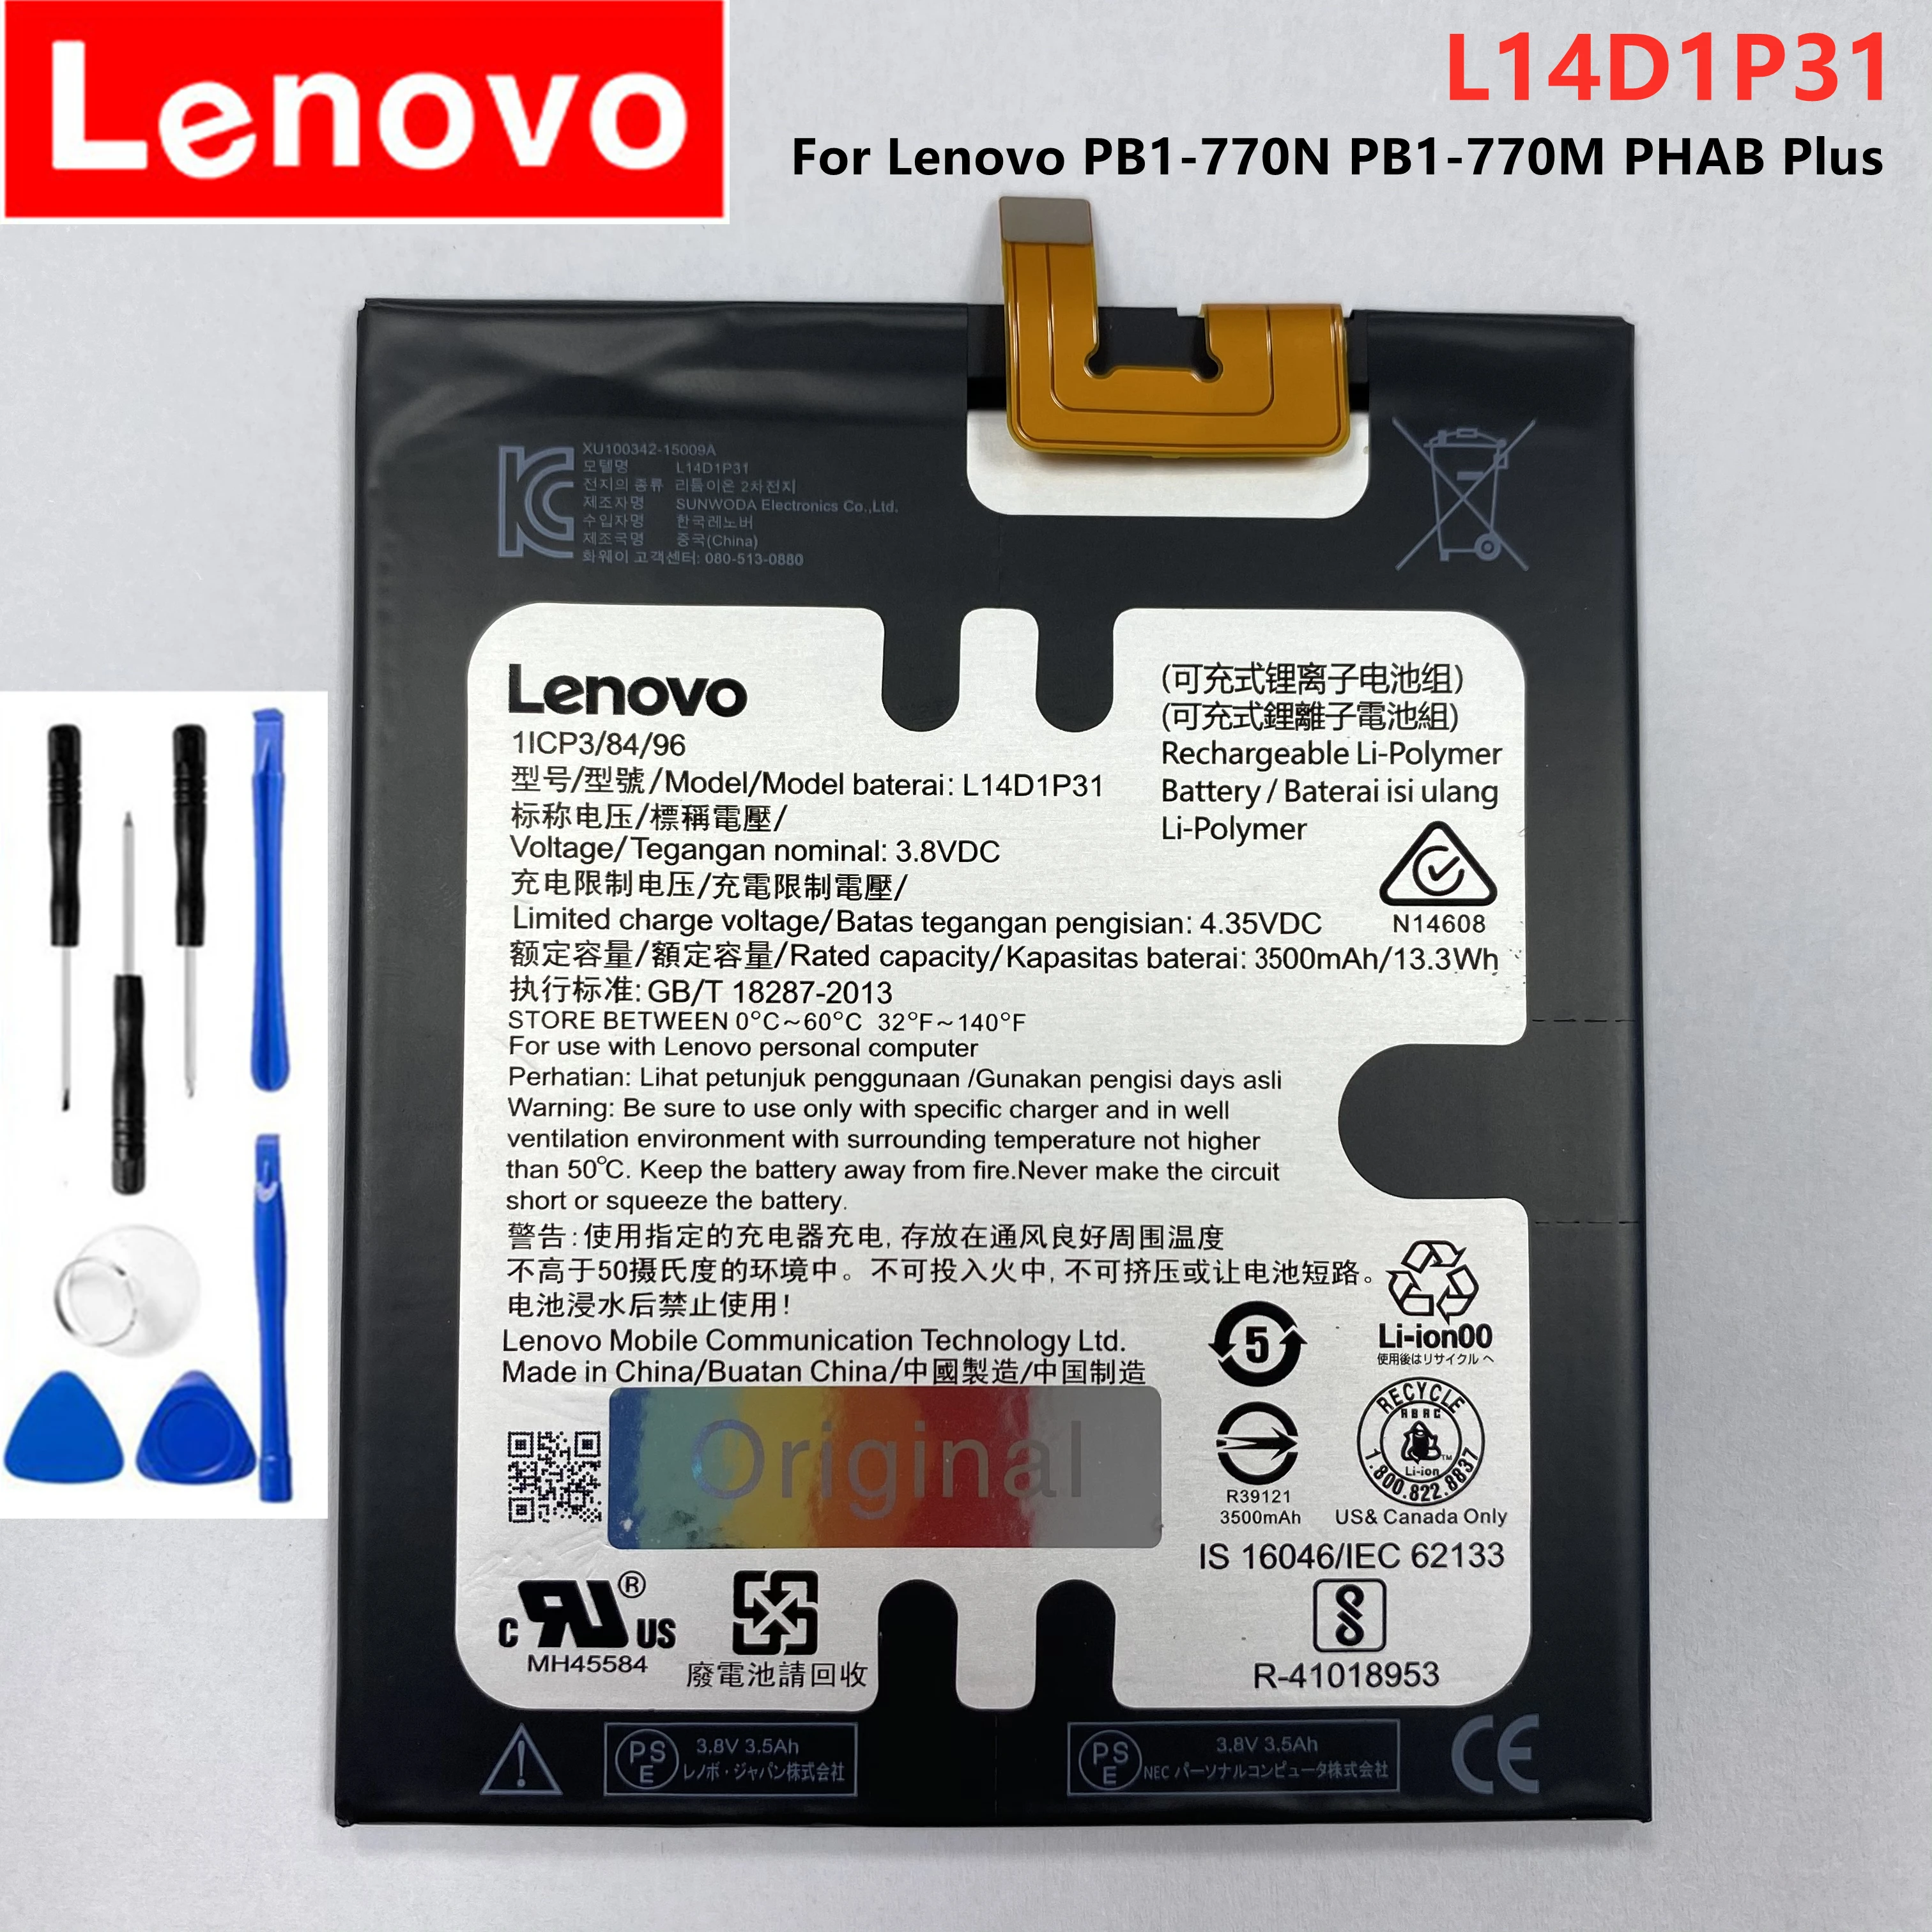 Оригинальный аккумулятор Lenovo L14D1P31 3500 мАч для PB1-770N PHAB Plus l14d1p31 новый